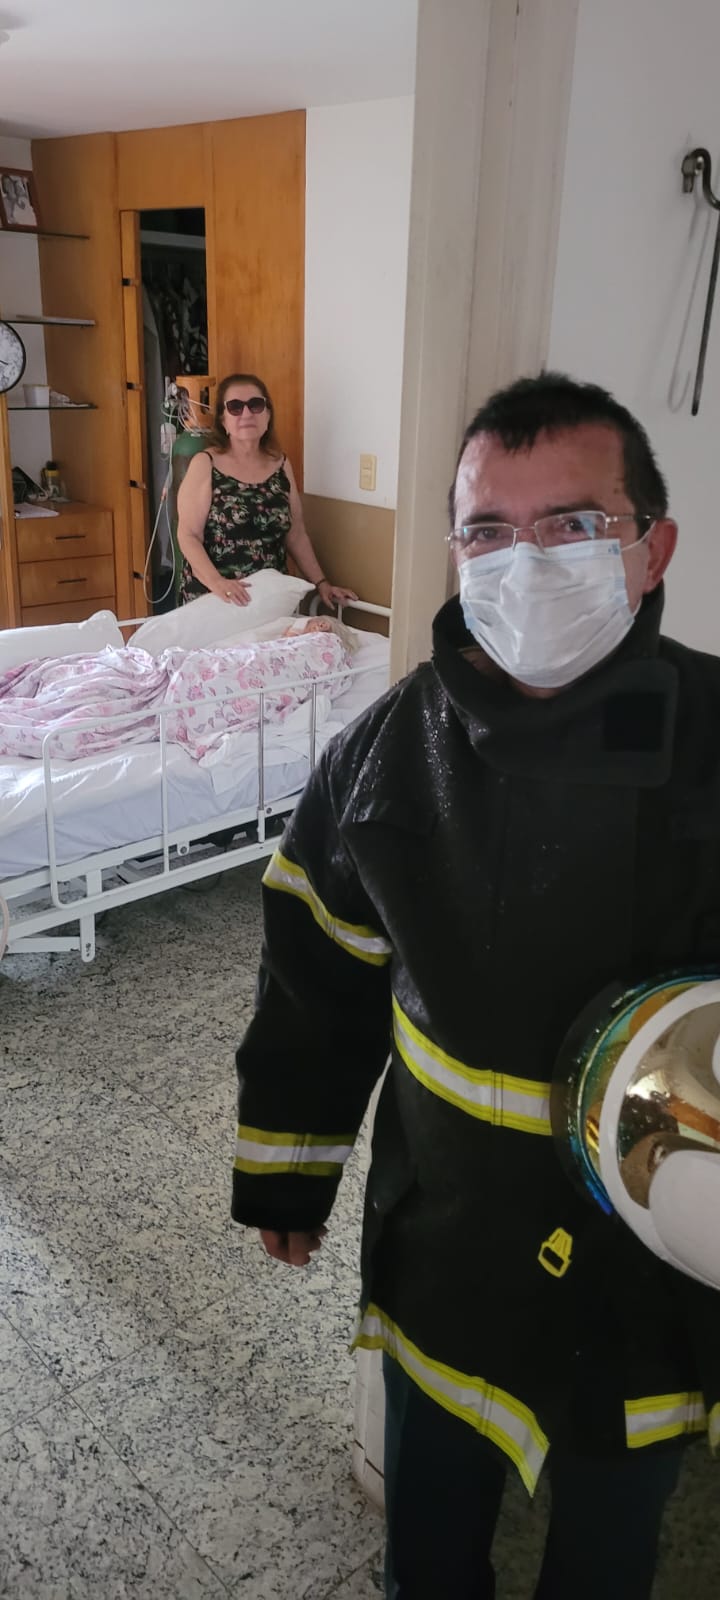 Corpo de Bombeiros debela incêndio, resgata pessoas e animais em apartamento no bairro Cocó em Fortaleza